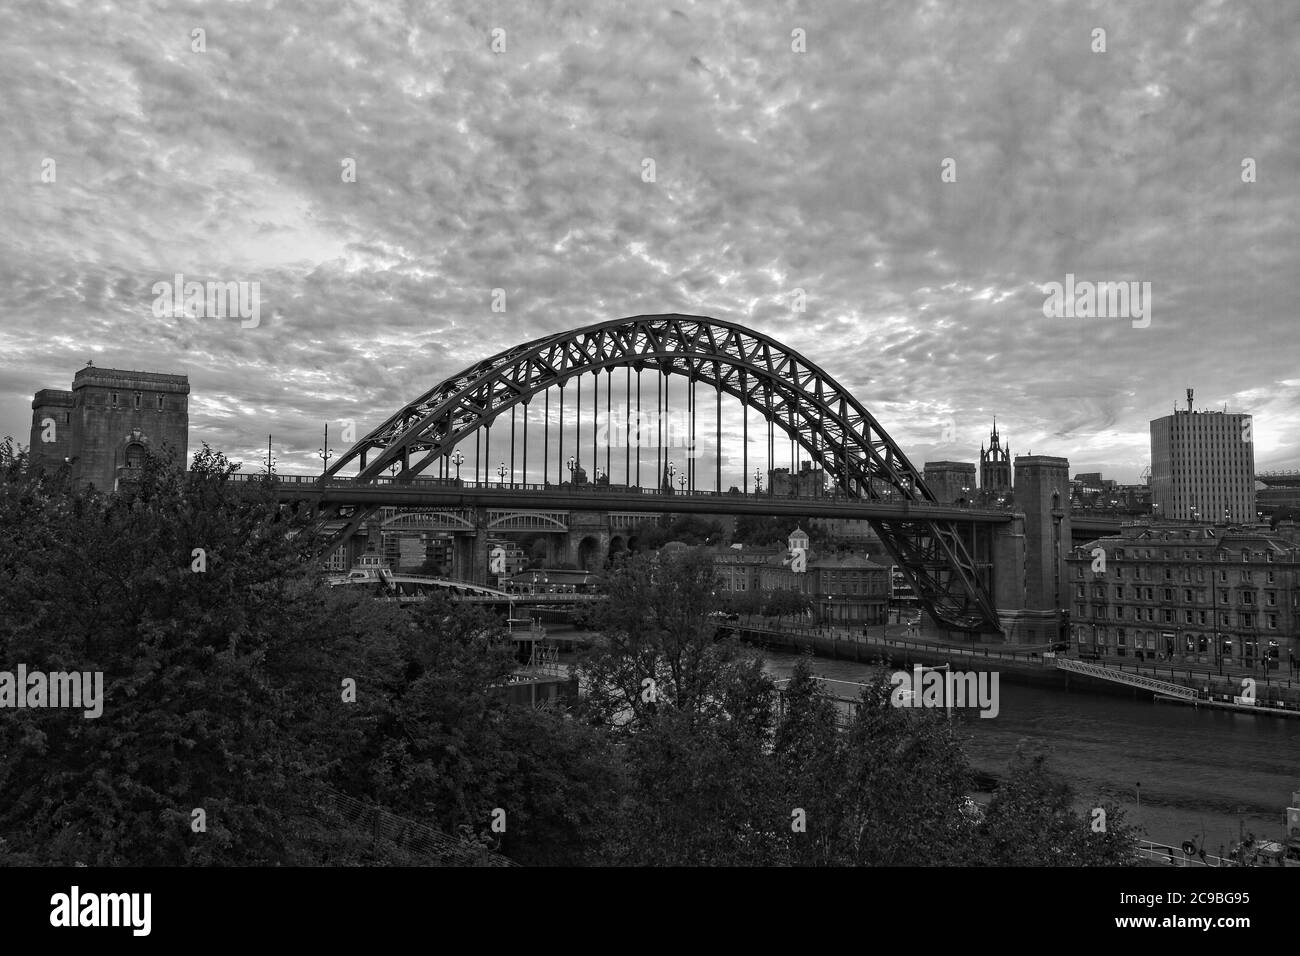 L'arche emblématique du pont et du quai de Tyne à Newcastle, en Tyne et de l'habillement prises au coucher du soleil du côté de Gateshead de la rivière Tyne. Banque D'Images